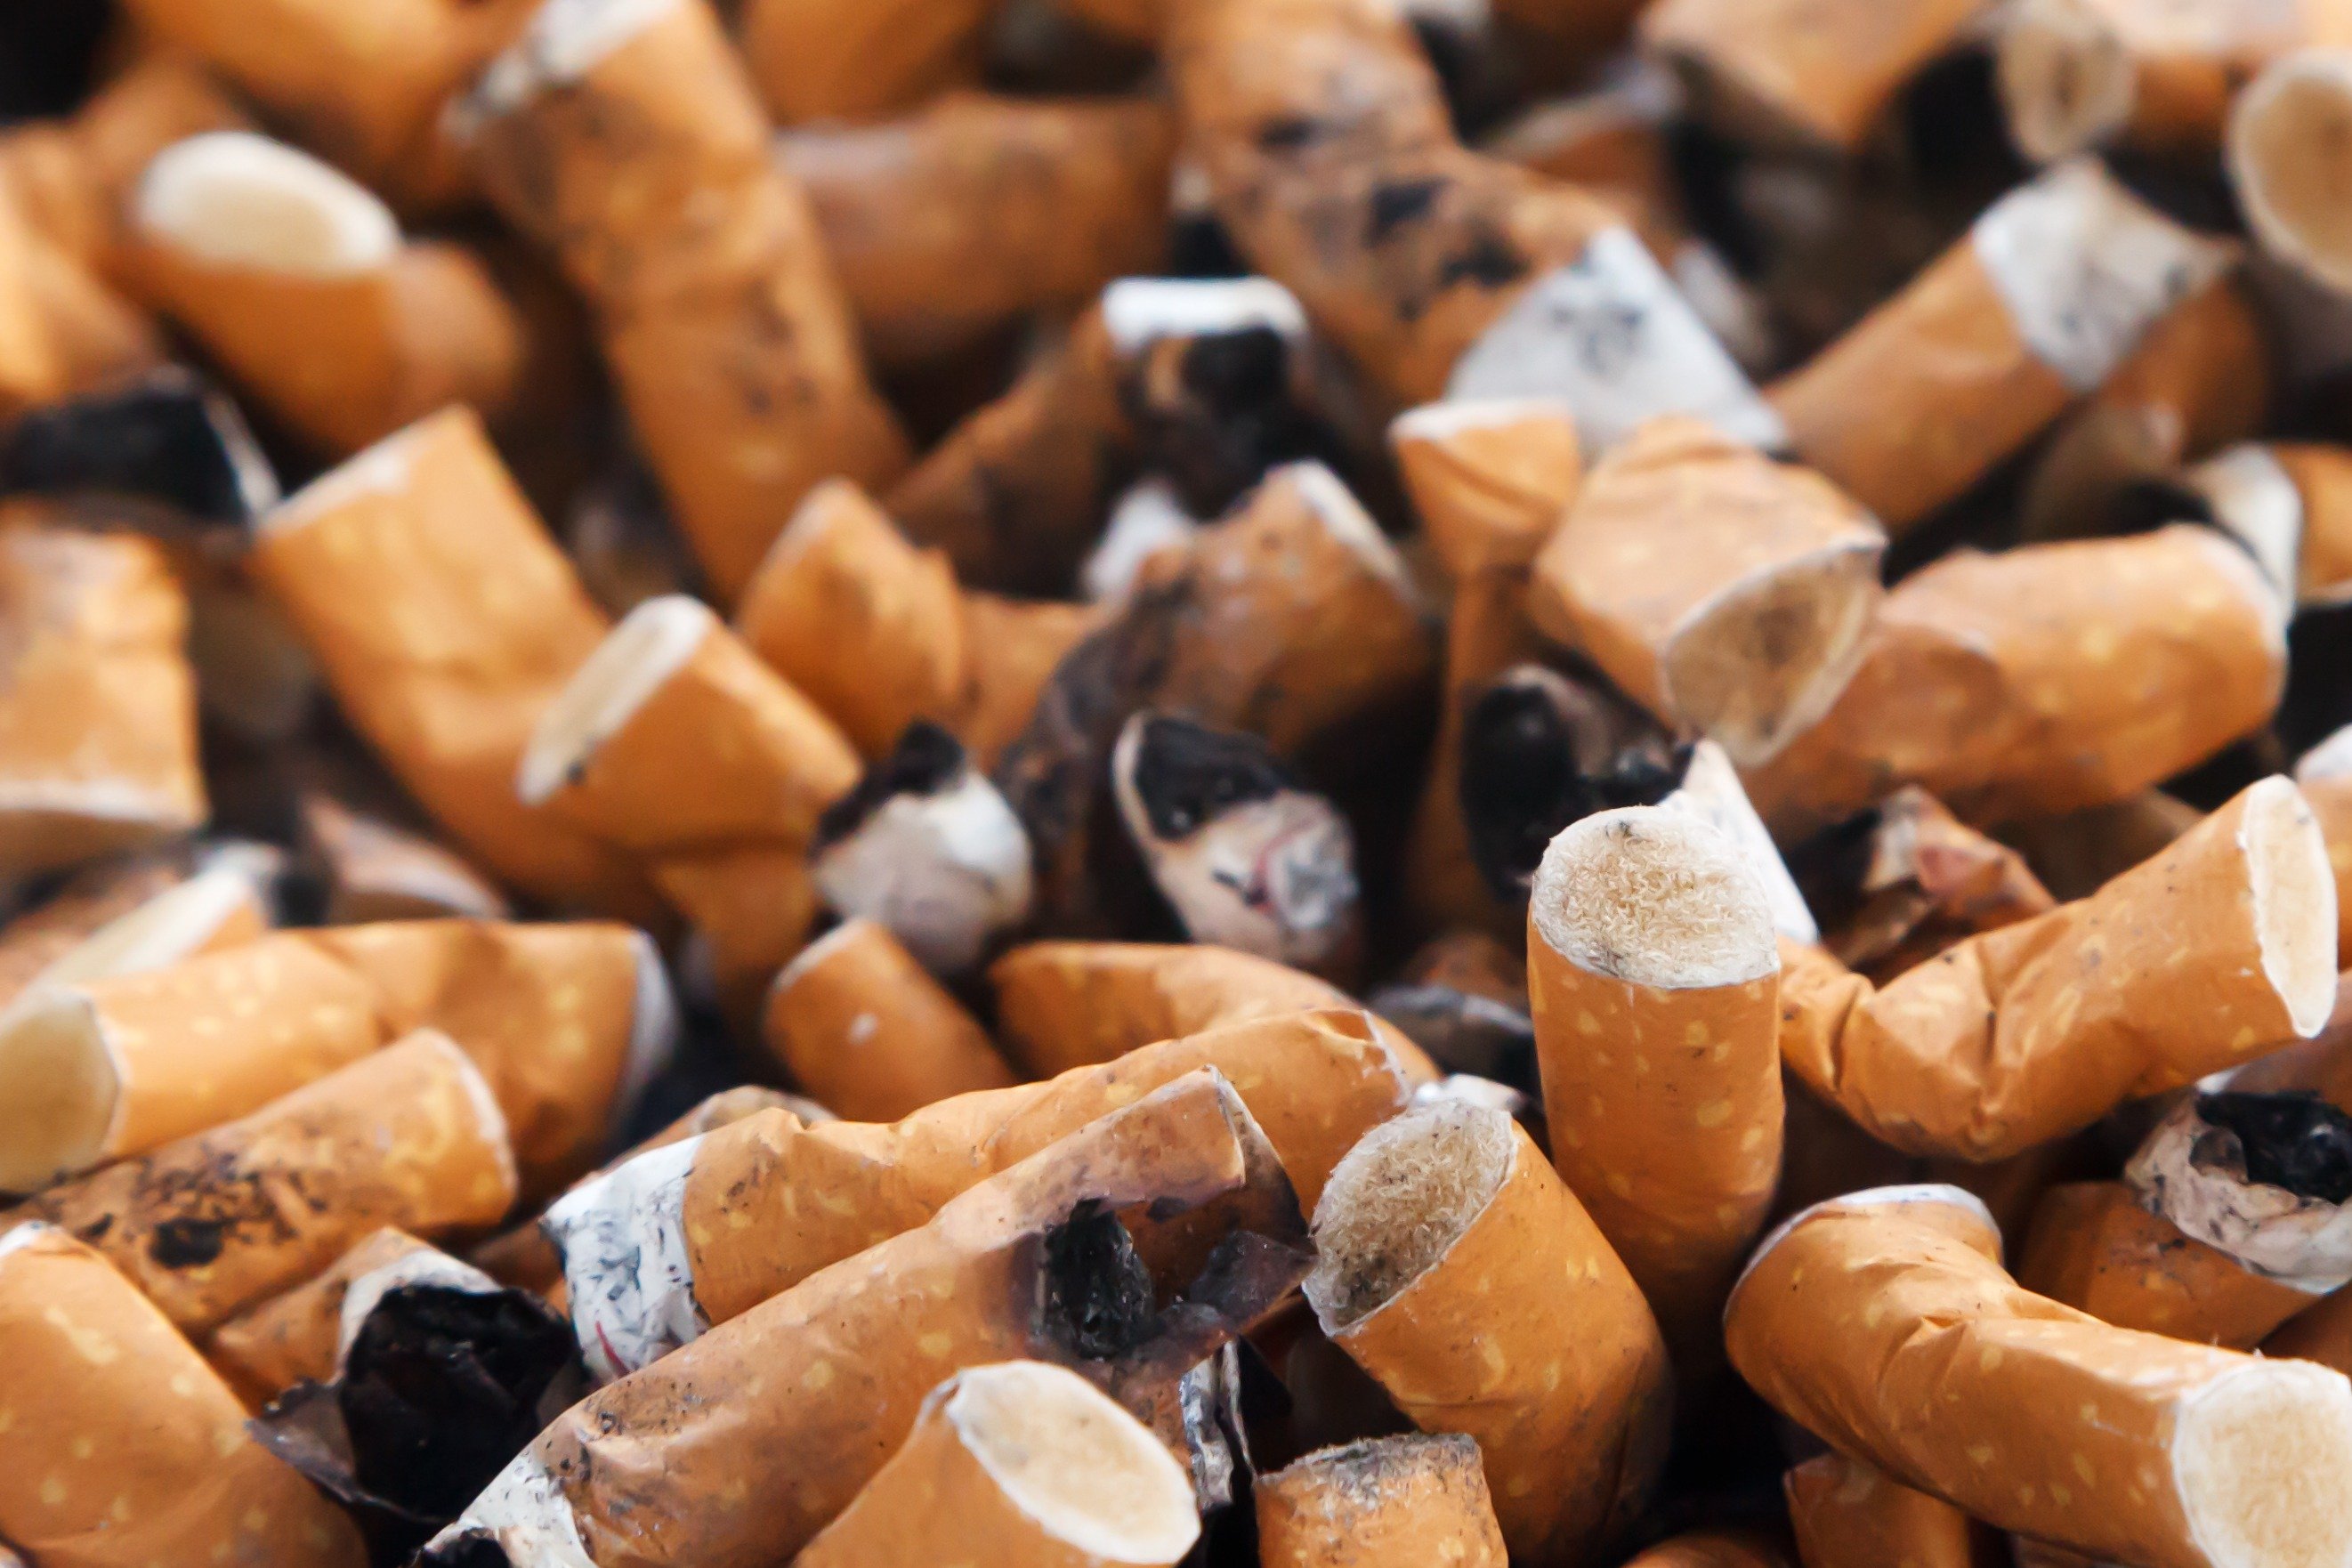 Fumar y beber perjudica las arterias de los adolescentes, según un estudio